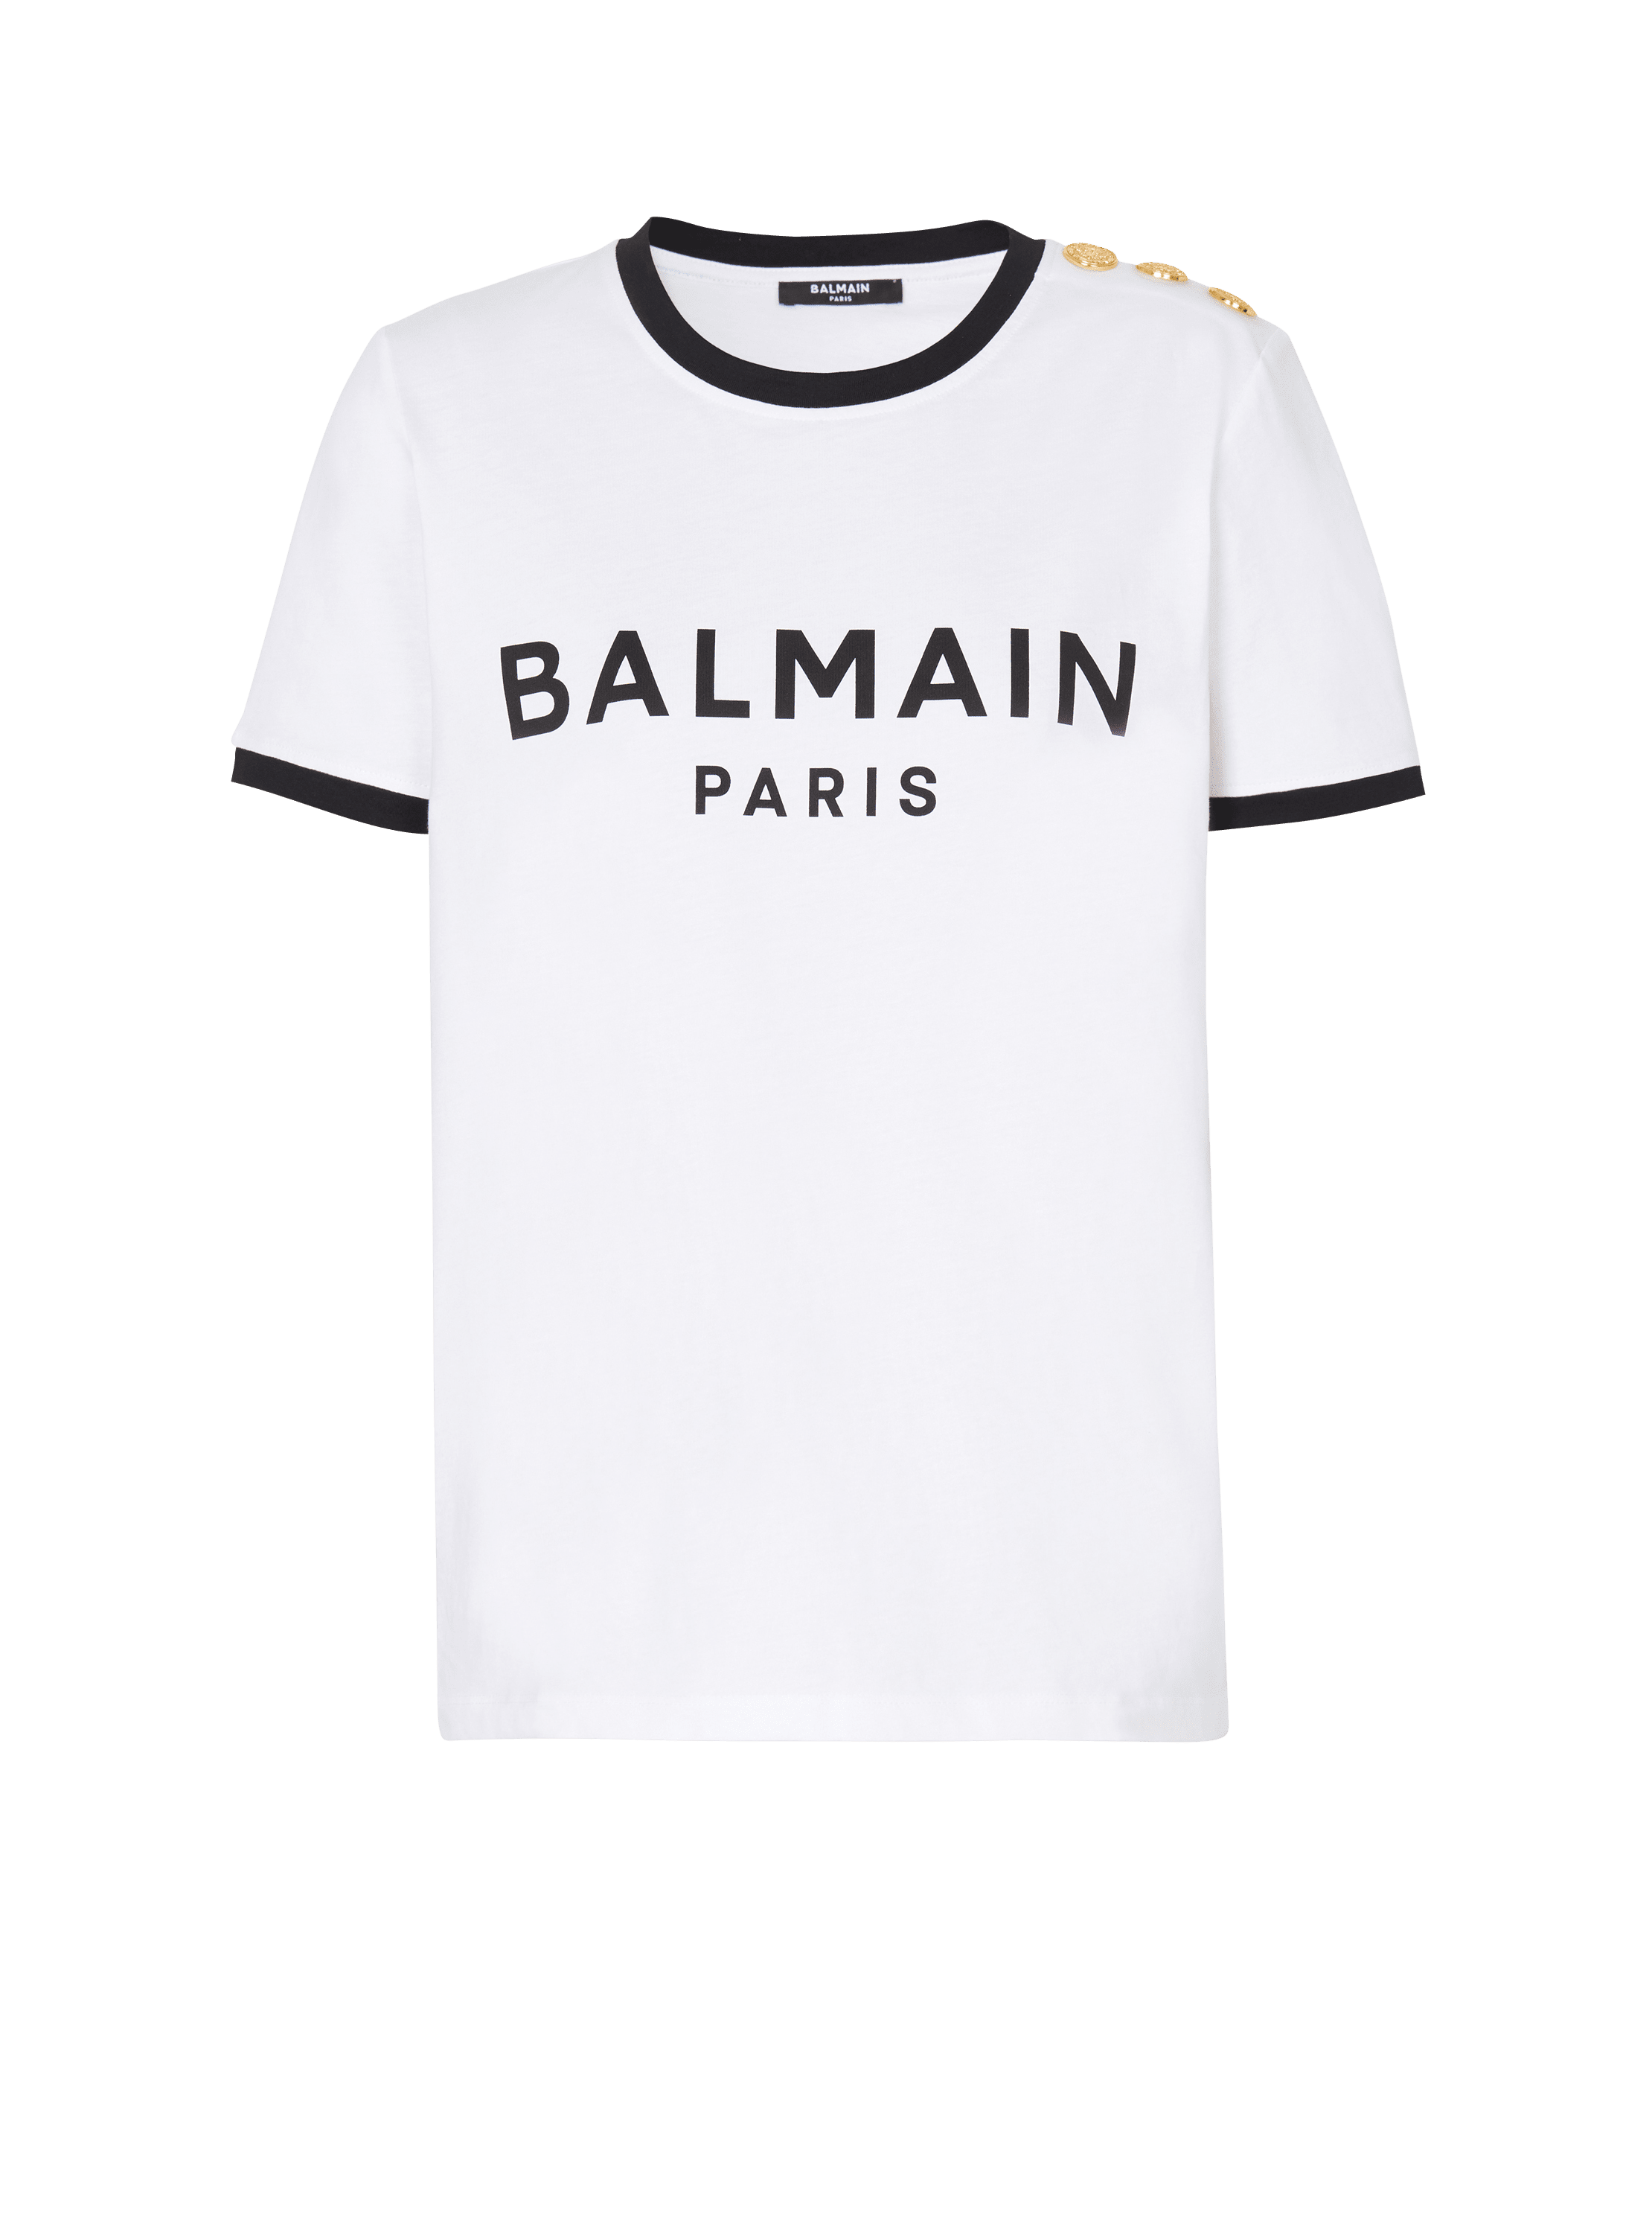 Balmain Paris 3버튼 티셔츠